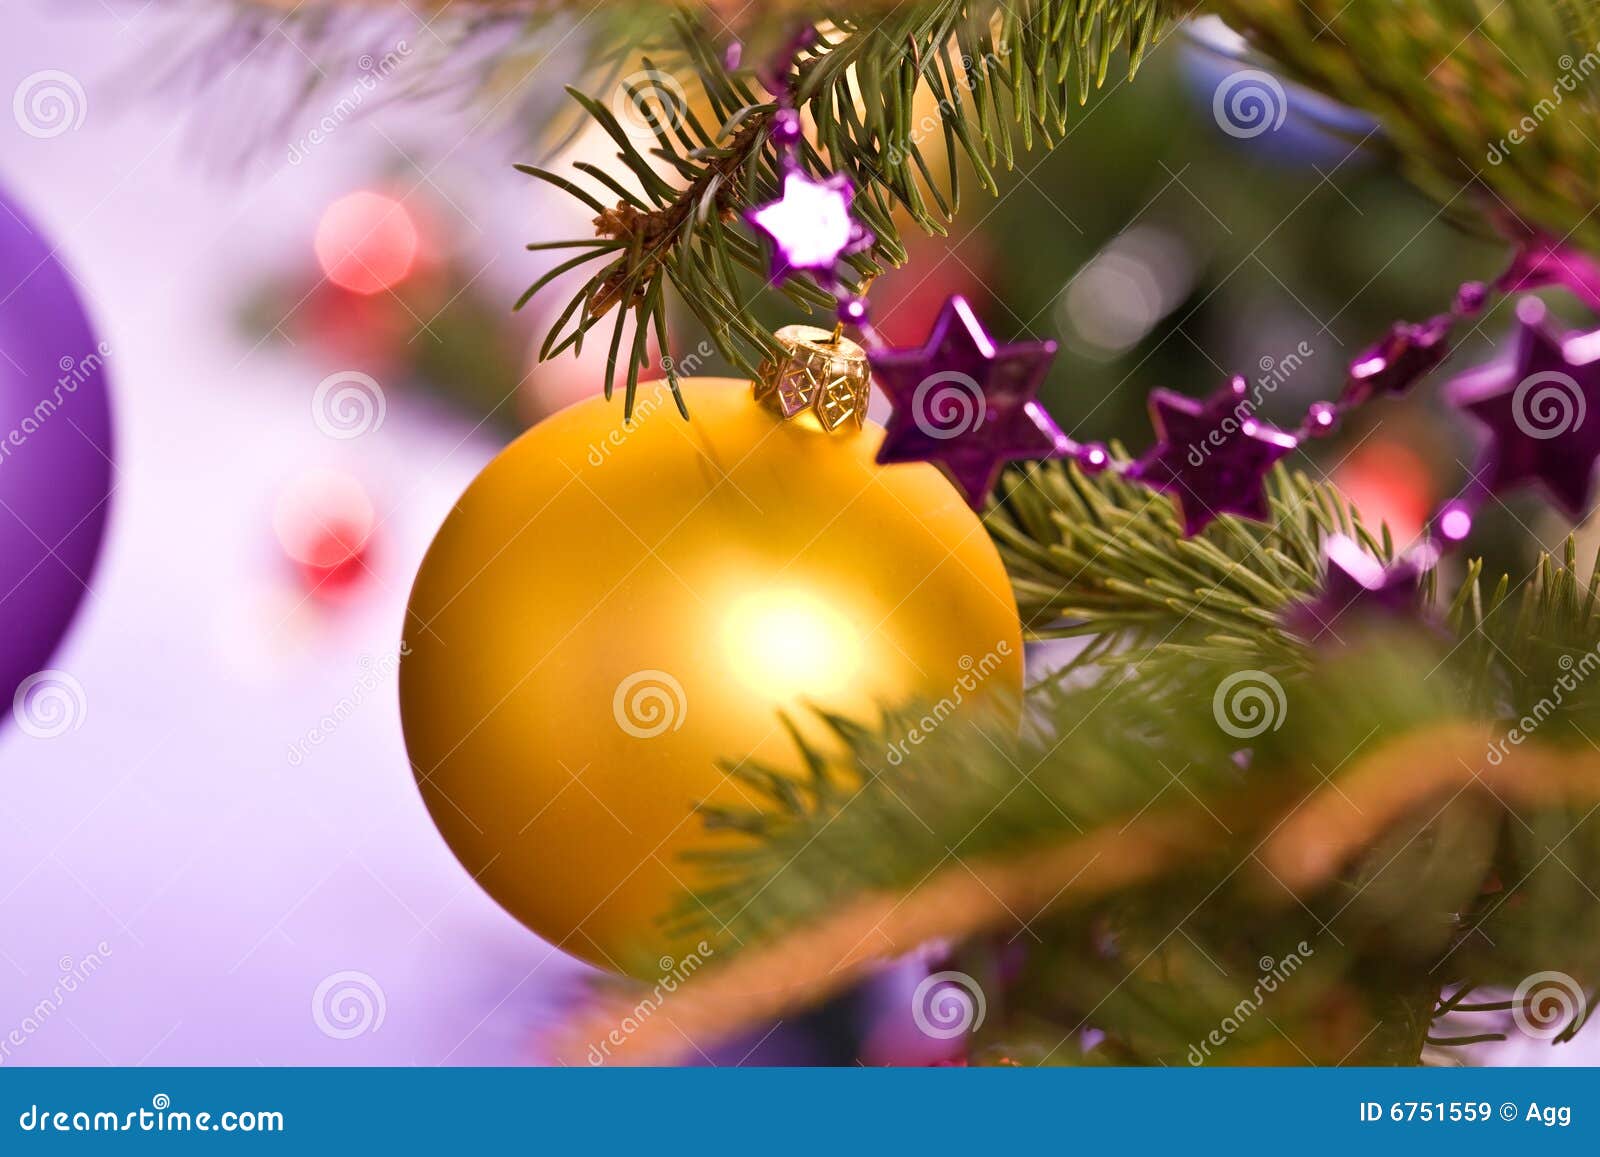 Christmas ball stock image. Image of celebration, year - 6751559